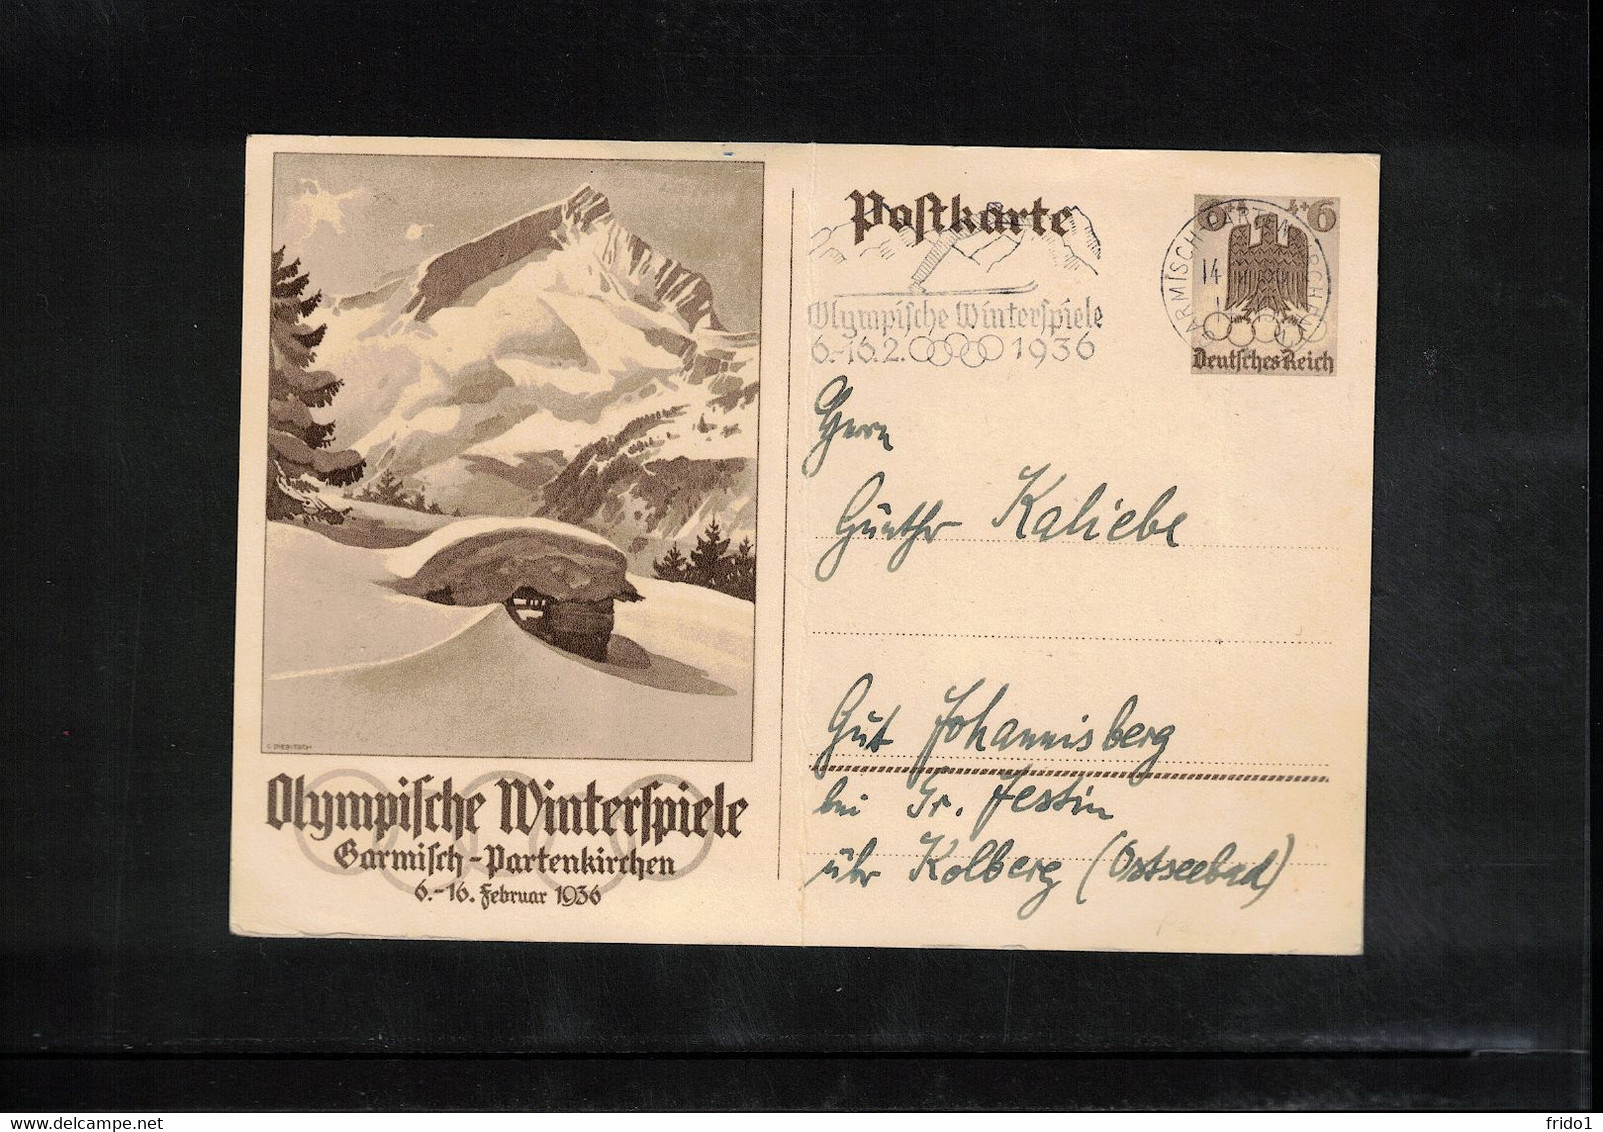 Germany / Deutschland 1936 Olympic Games Garmisch-Partenkirchen - Postal Stationery Postcard - Interesting Postmark - Winter 1936: Garmisch-Partenkirchen